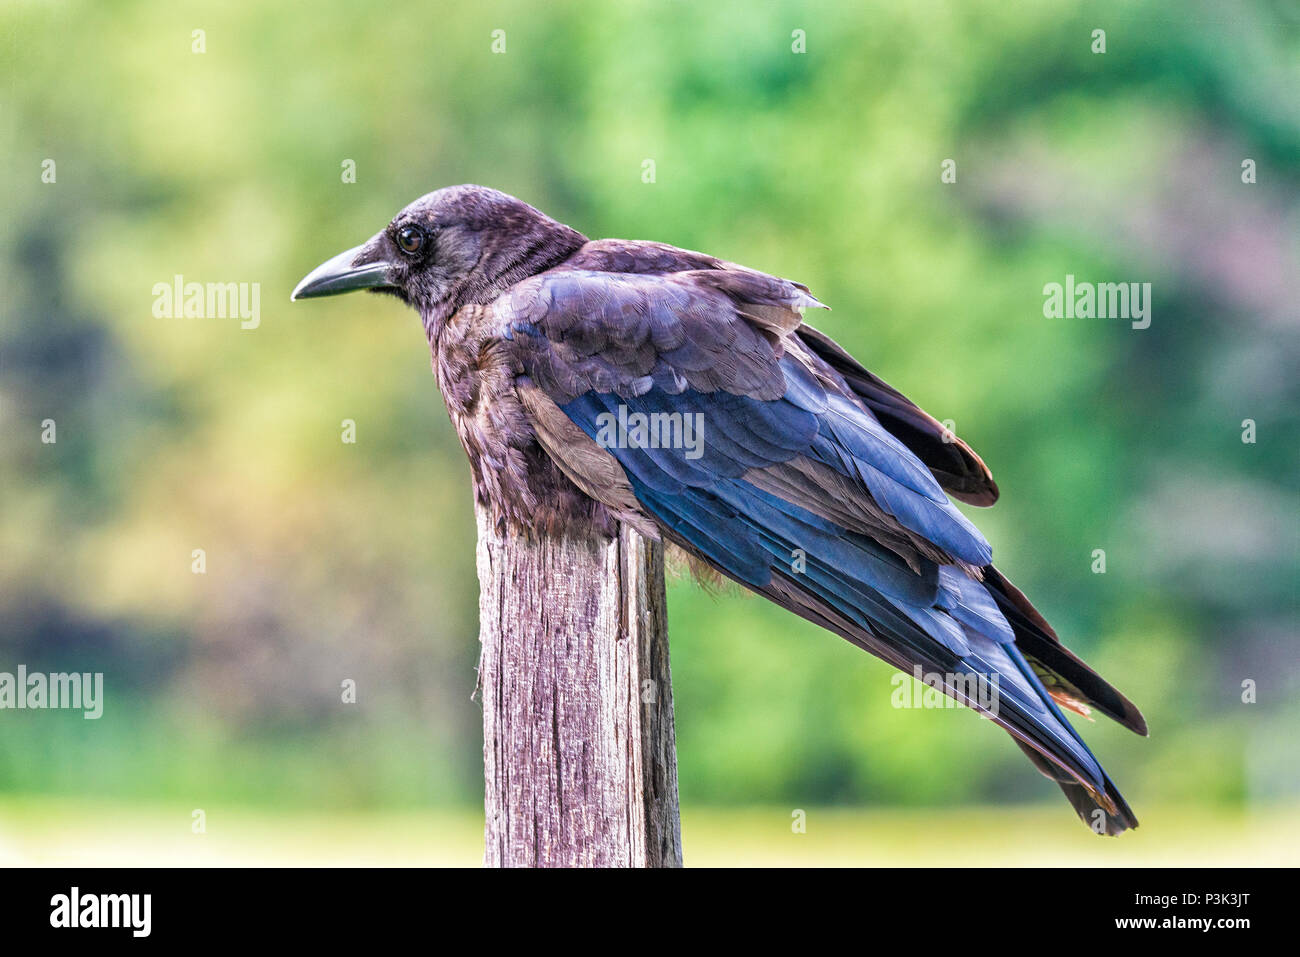 Horizontale Nahaufnahme eines rumpled Raven auf einem zaunpfosten mit einem unscharf Hintergrund. Stockfoto